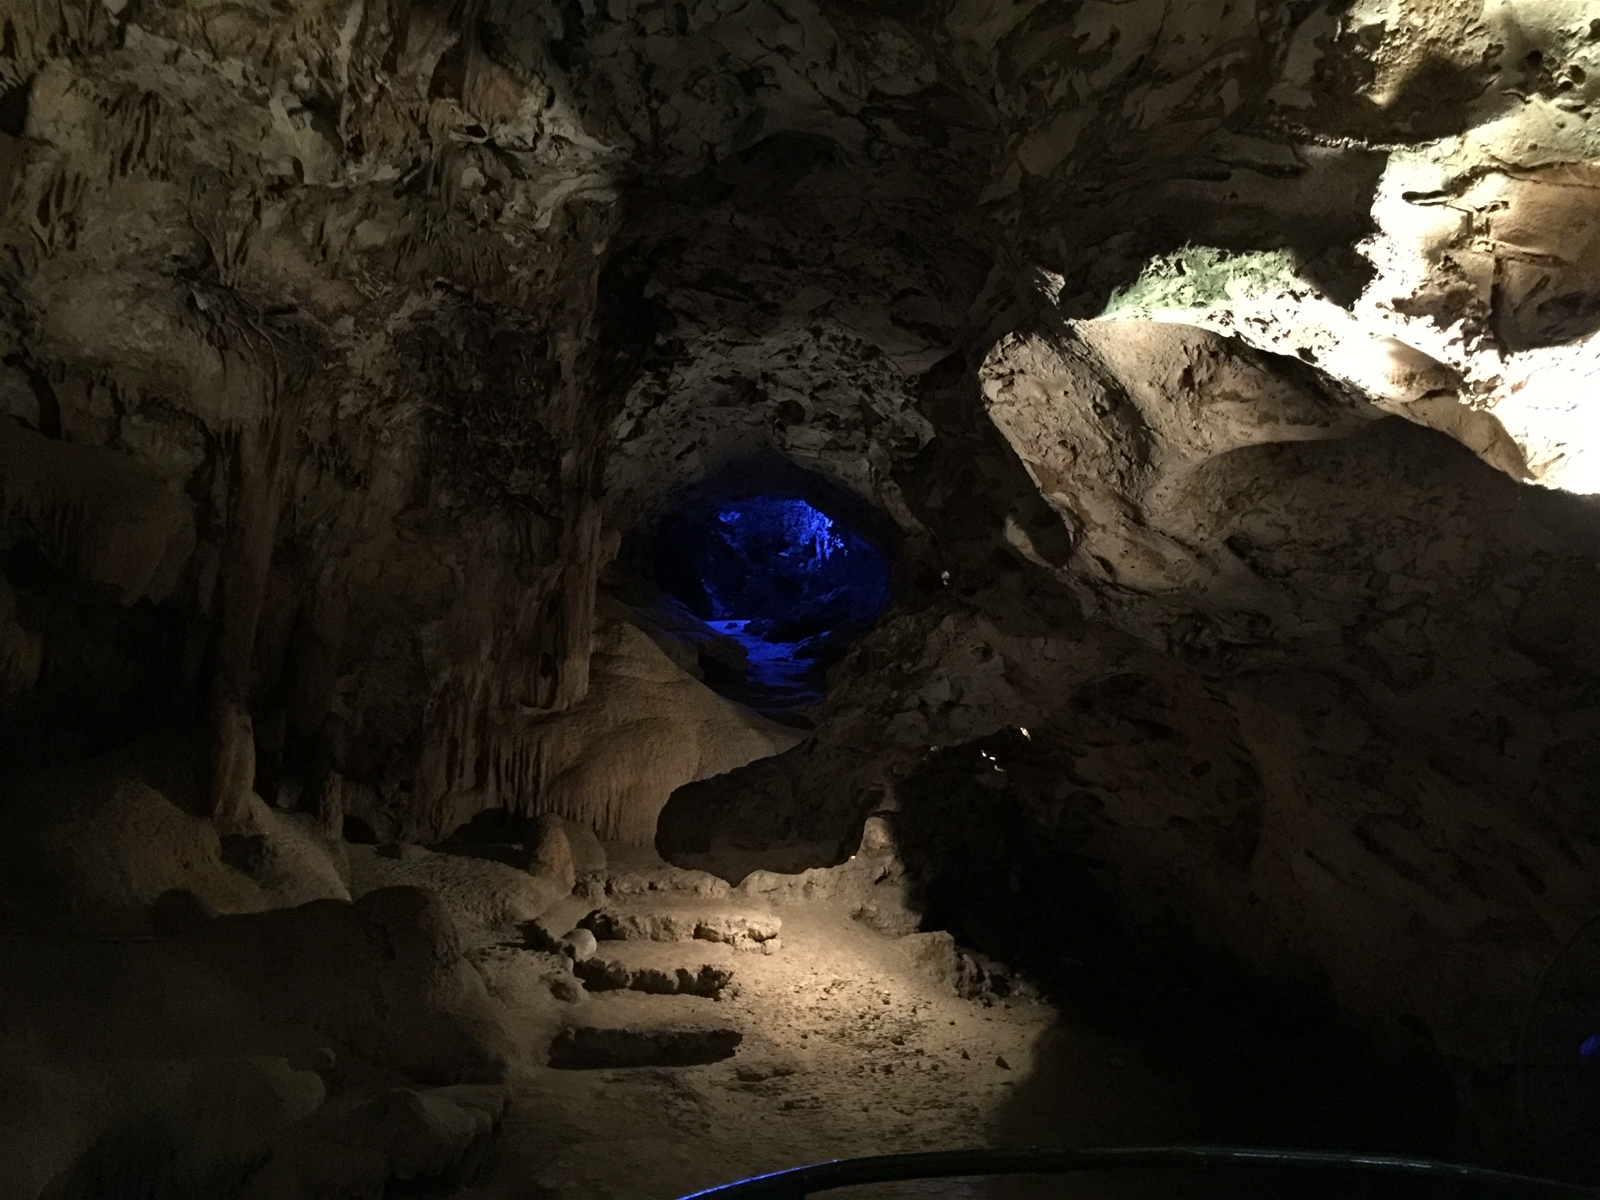 Hato Cave